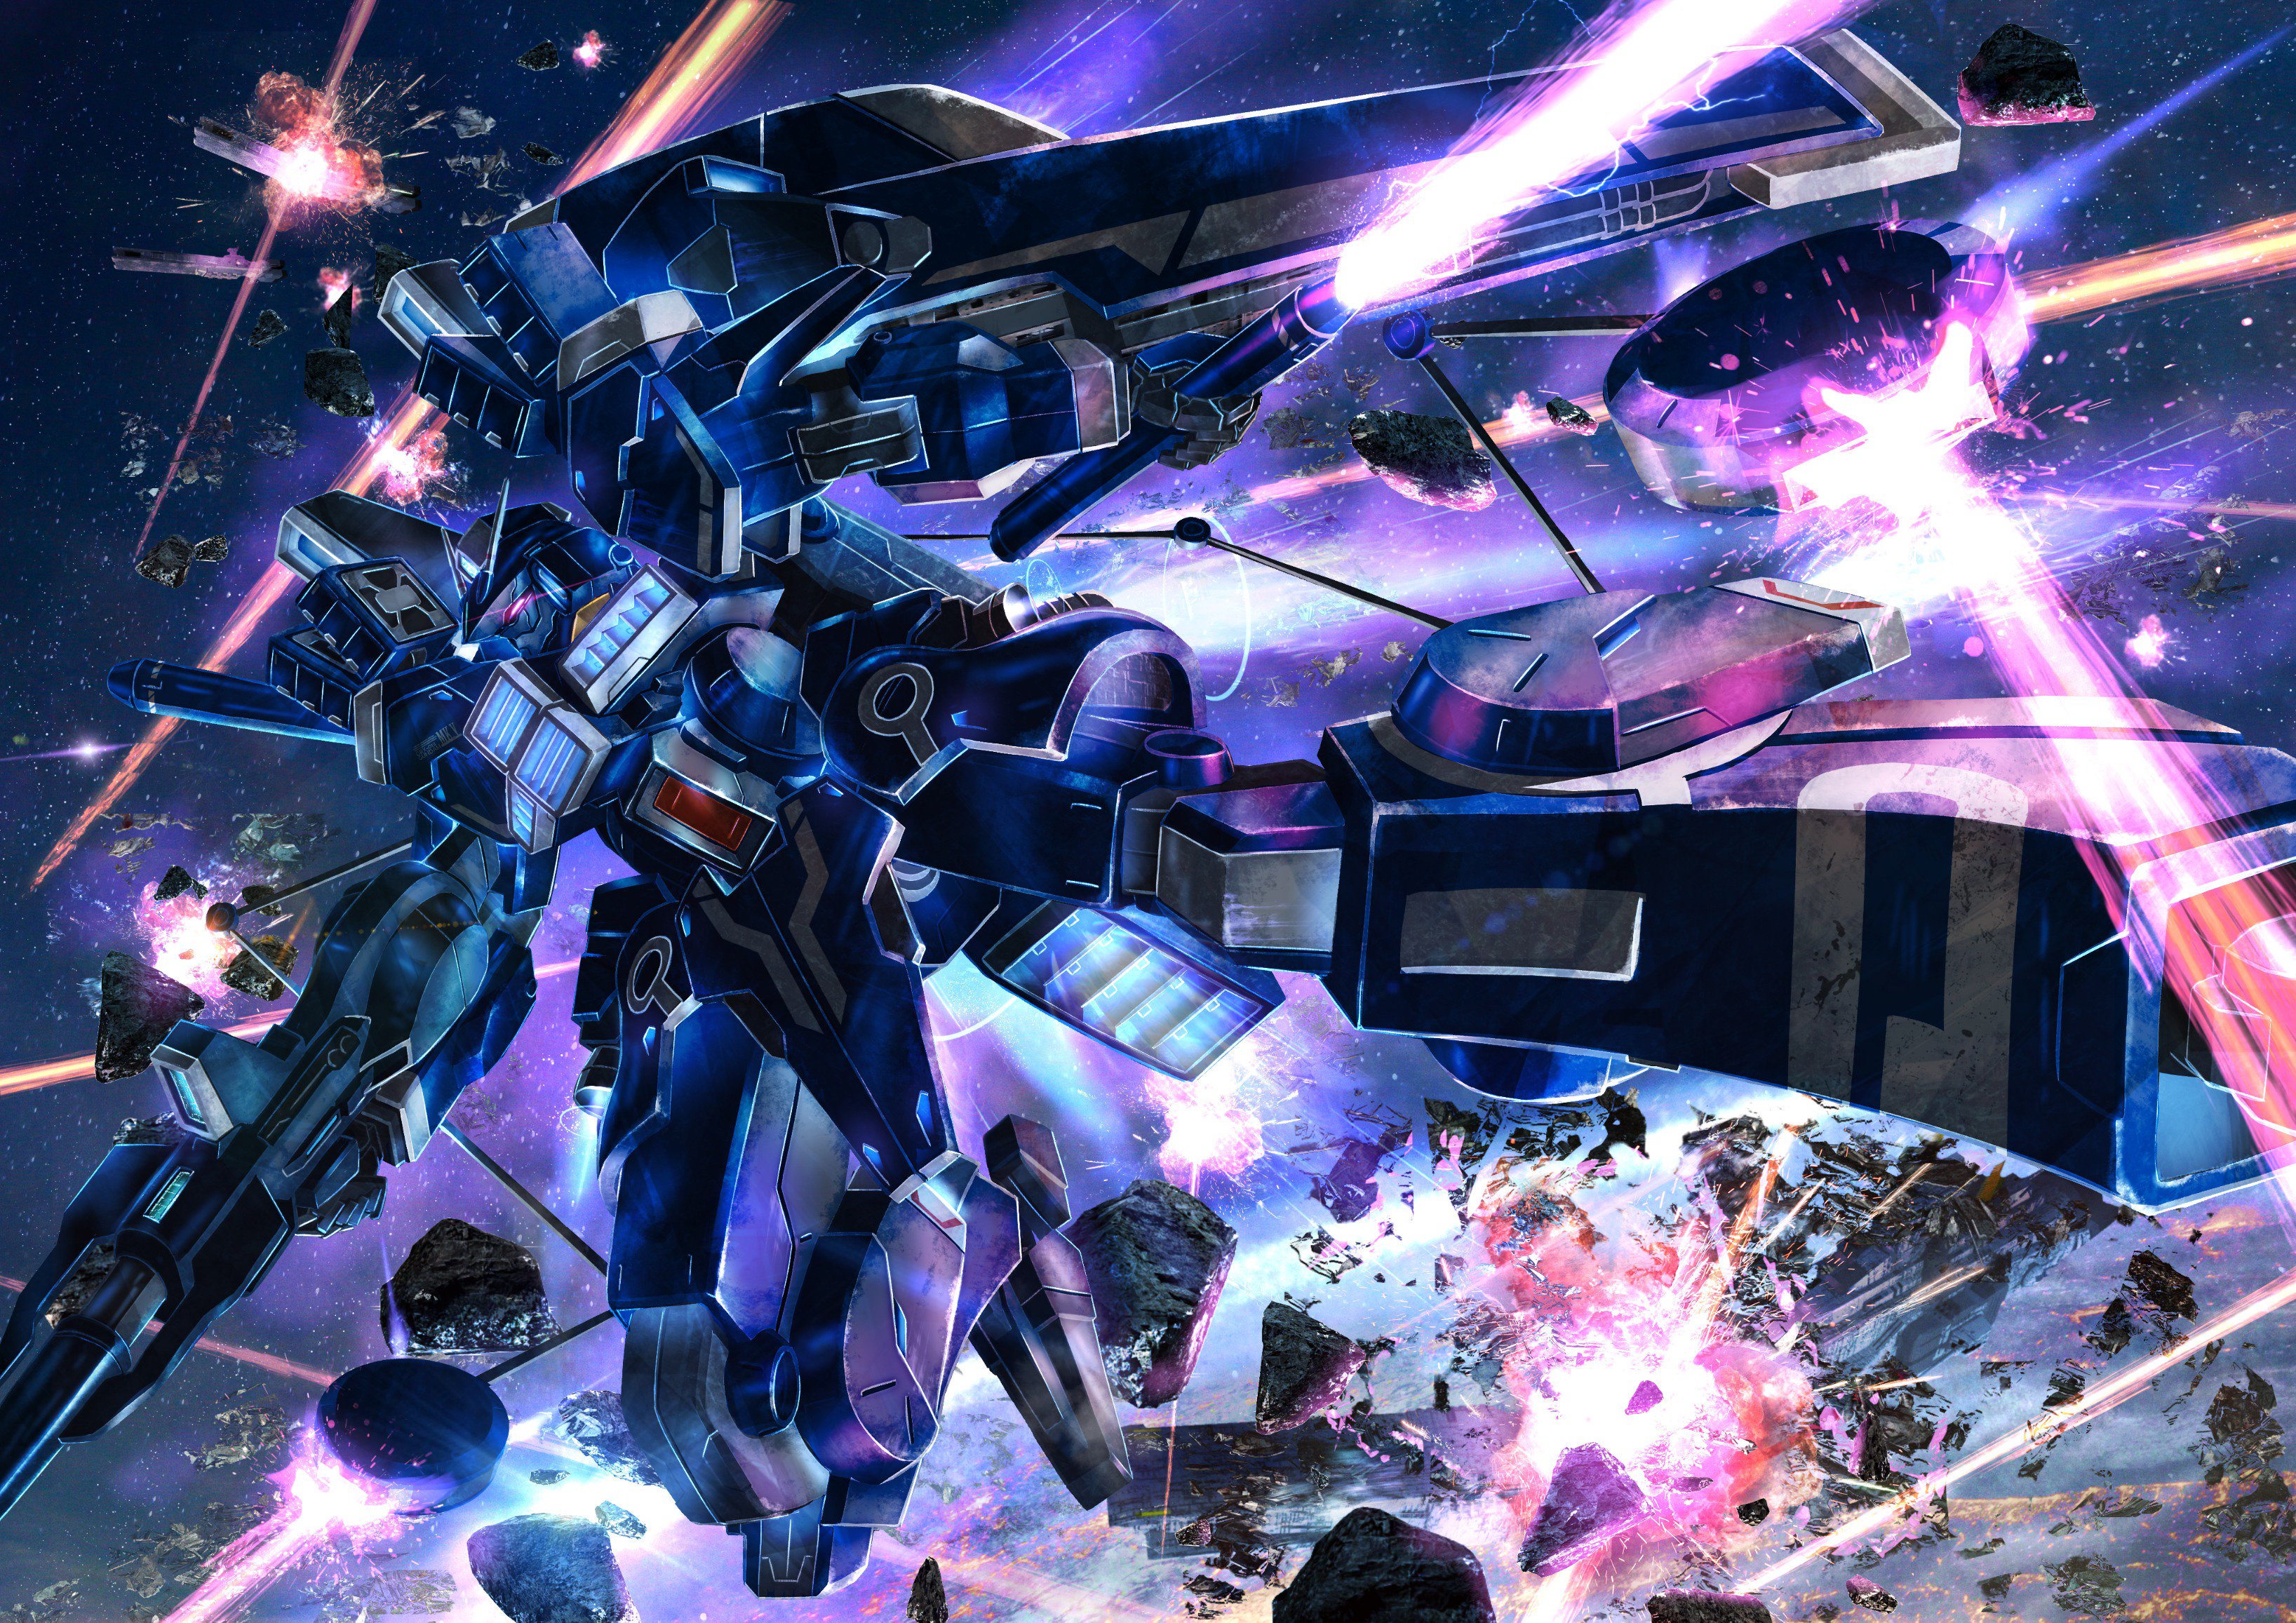 デラケン Gundam Sentinel から ガンダムmk を描きました 一年ぶりのリベンジ T Co Hkw0jvaydg Twitter